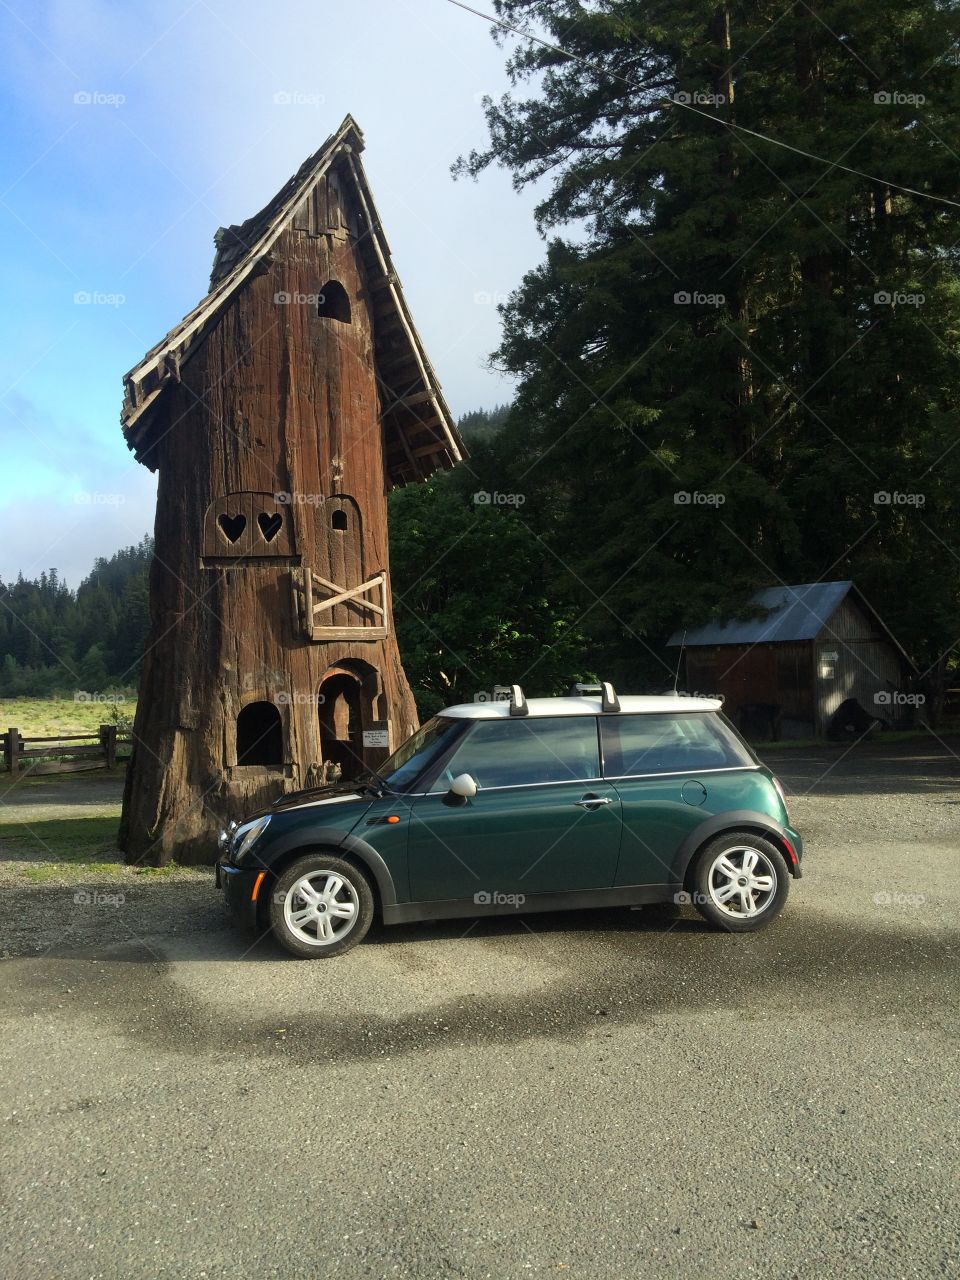 MINI Cooper and Redwood hut